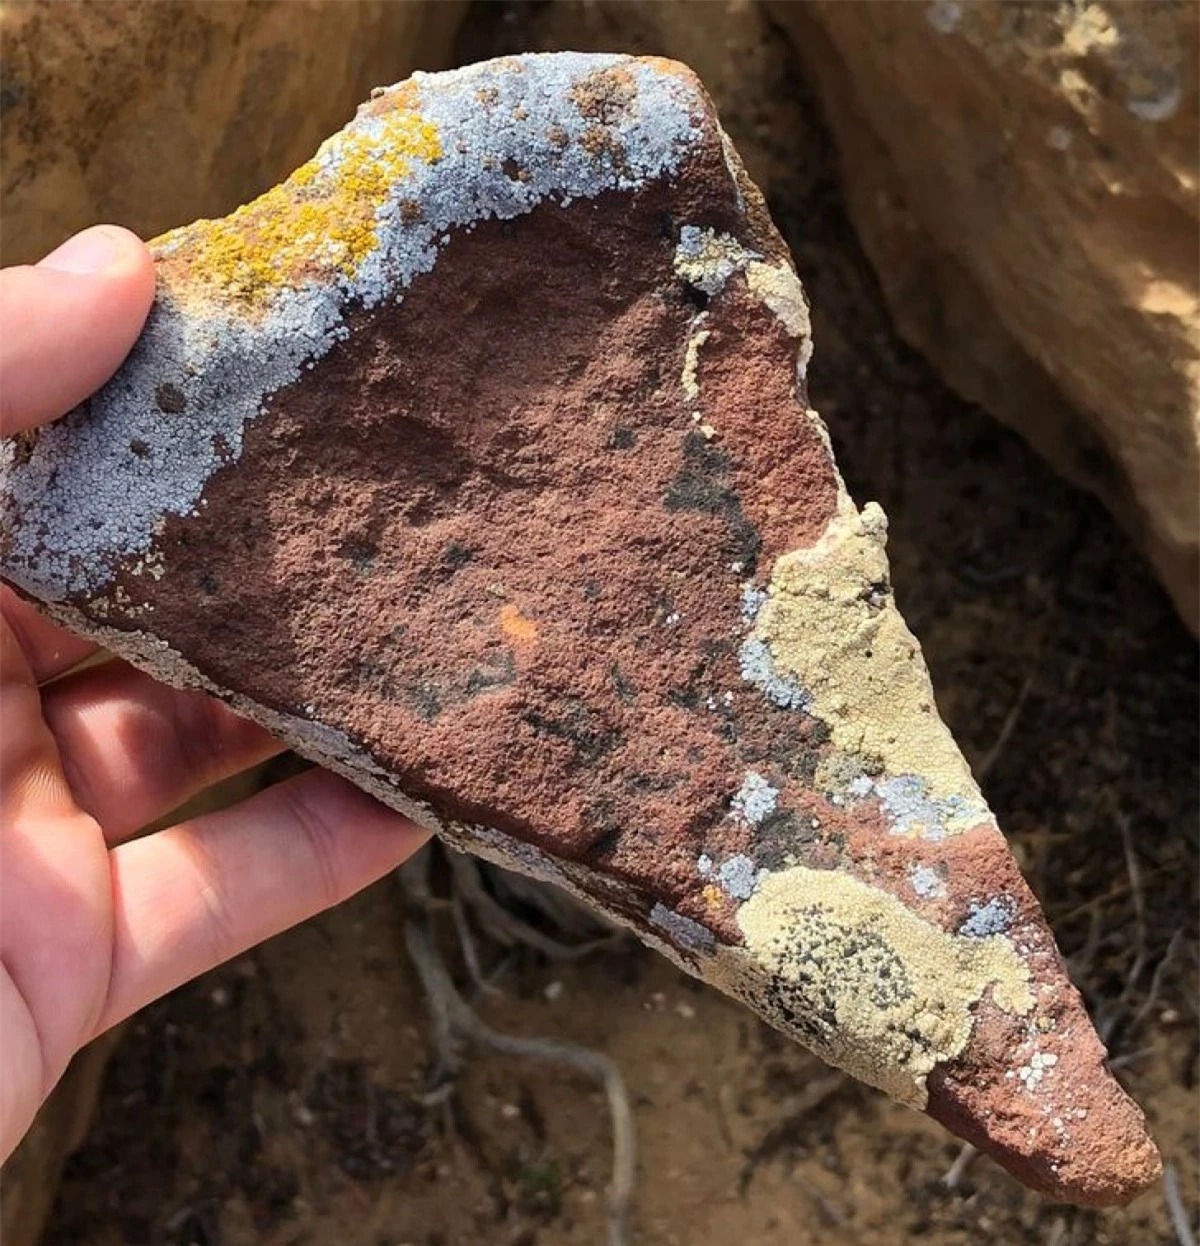 Miếng đá này trông như thể một miếng pizza.